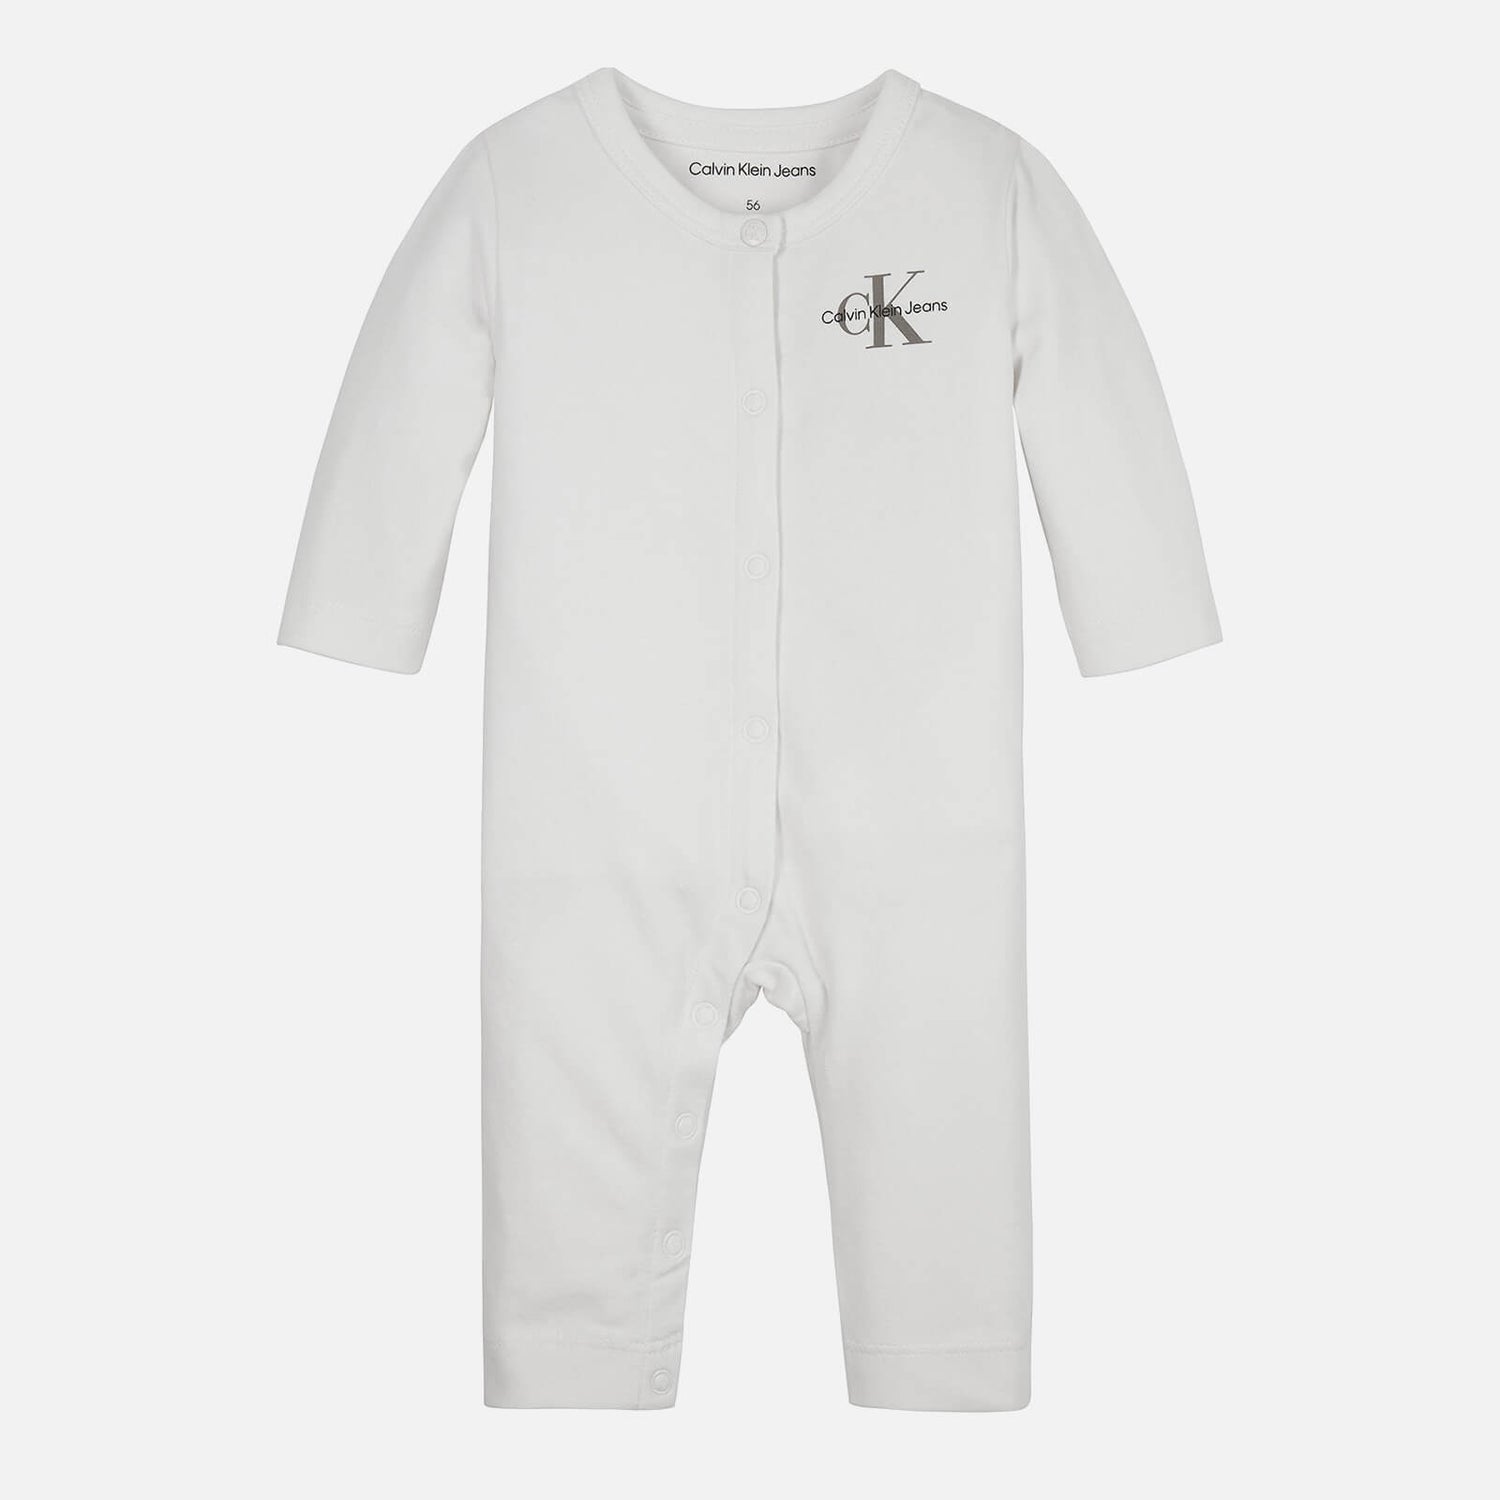 Calvin Klein Baby Stretch-Cotton Jersey Baby Grow - 3-6 months